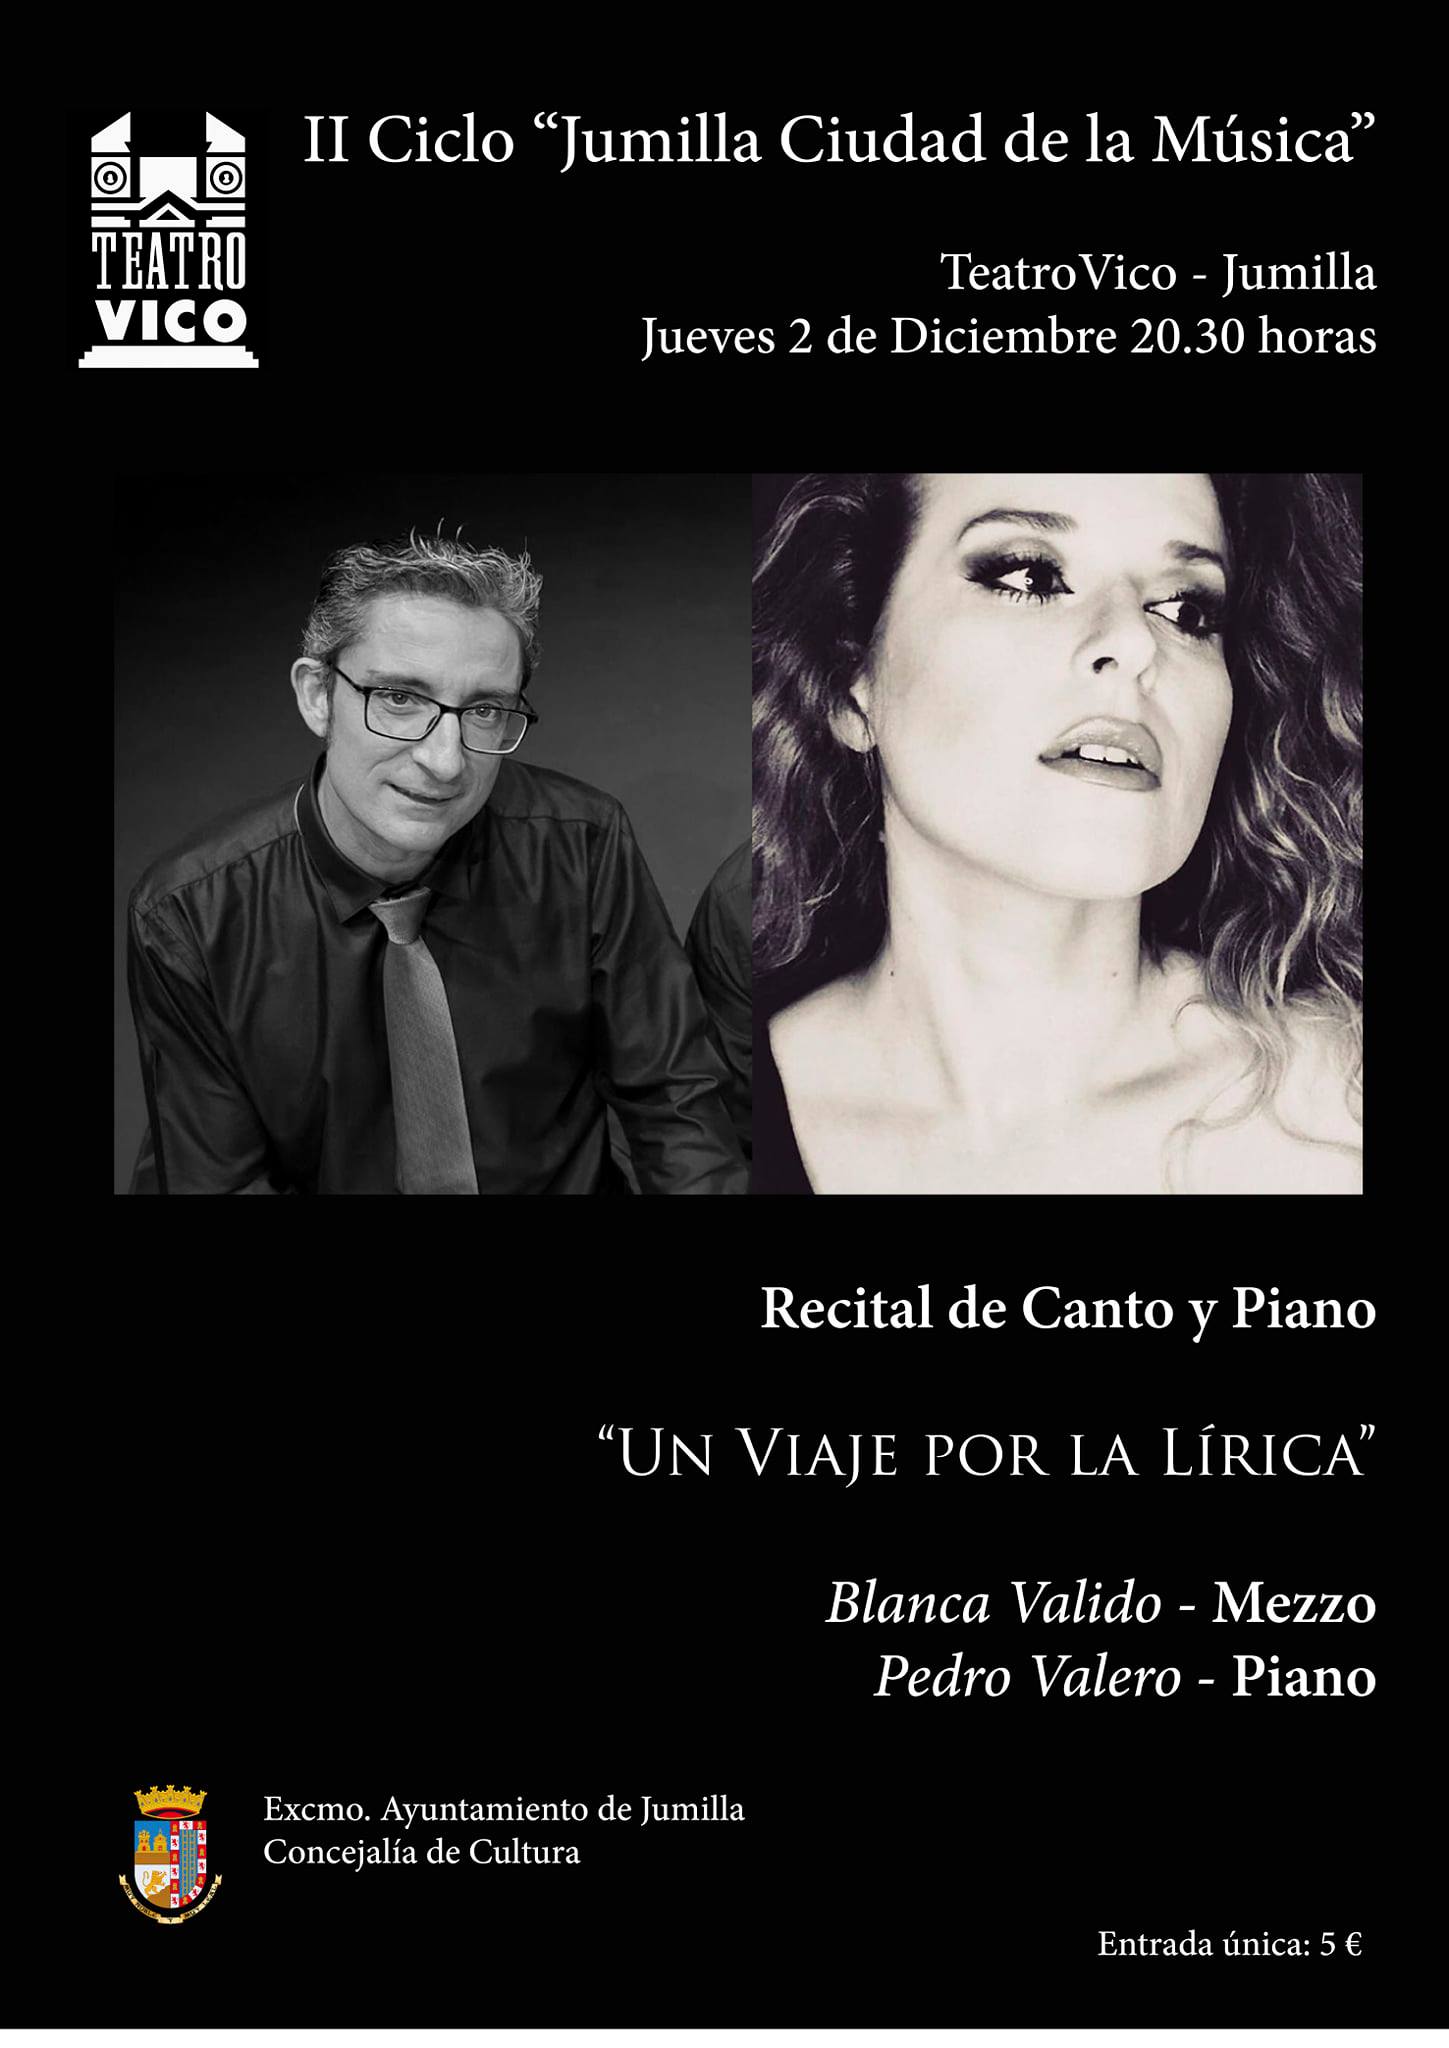 El pianista Pedro Valero y la mezzo Blanca Valido ofrecen este jueves “Un viaje por la lírica” en el Teatro Vico